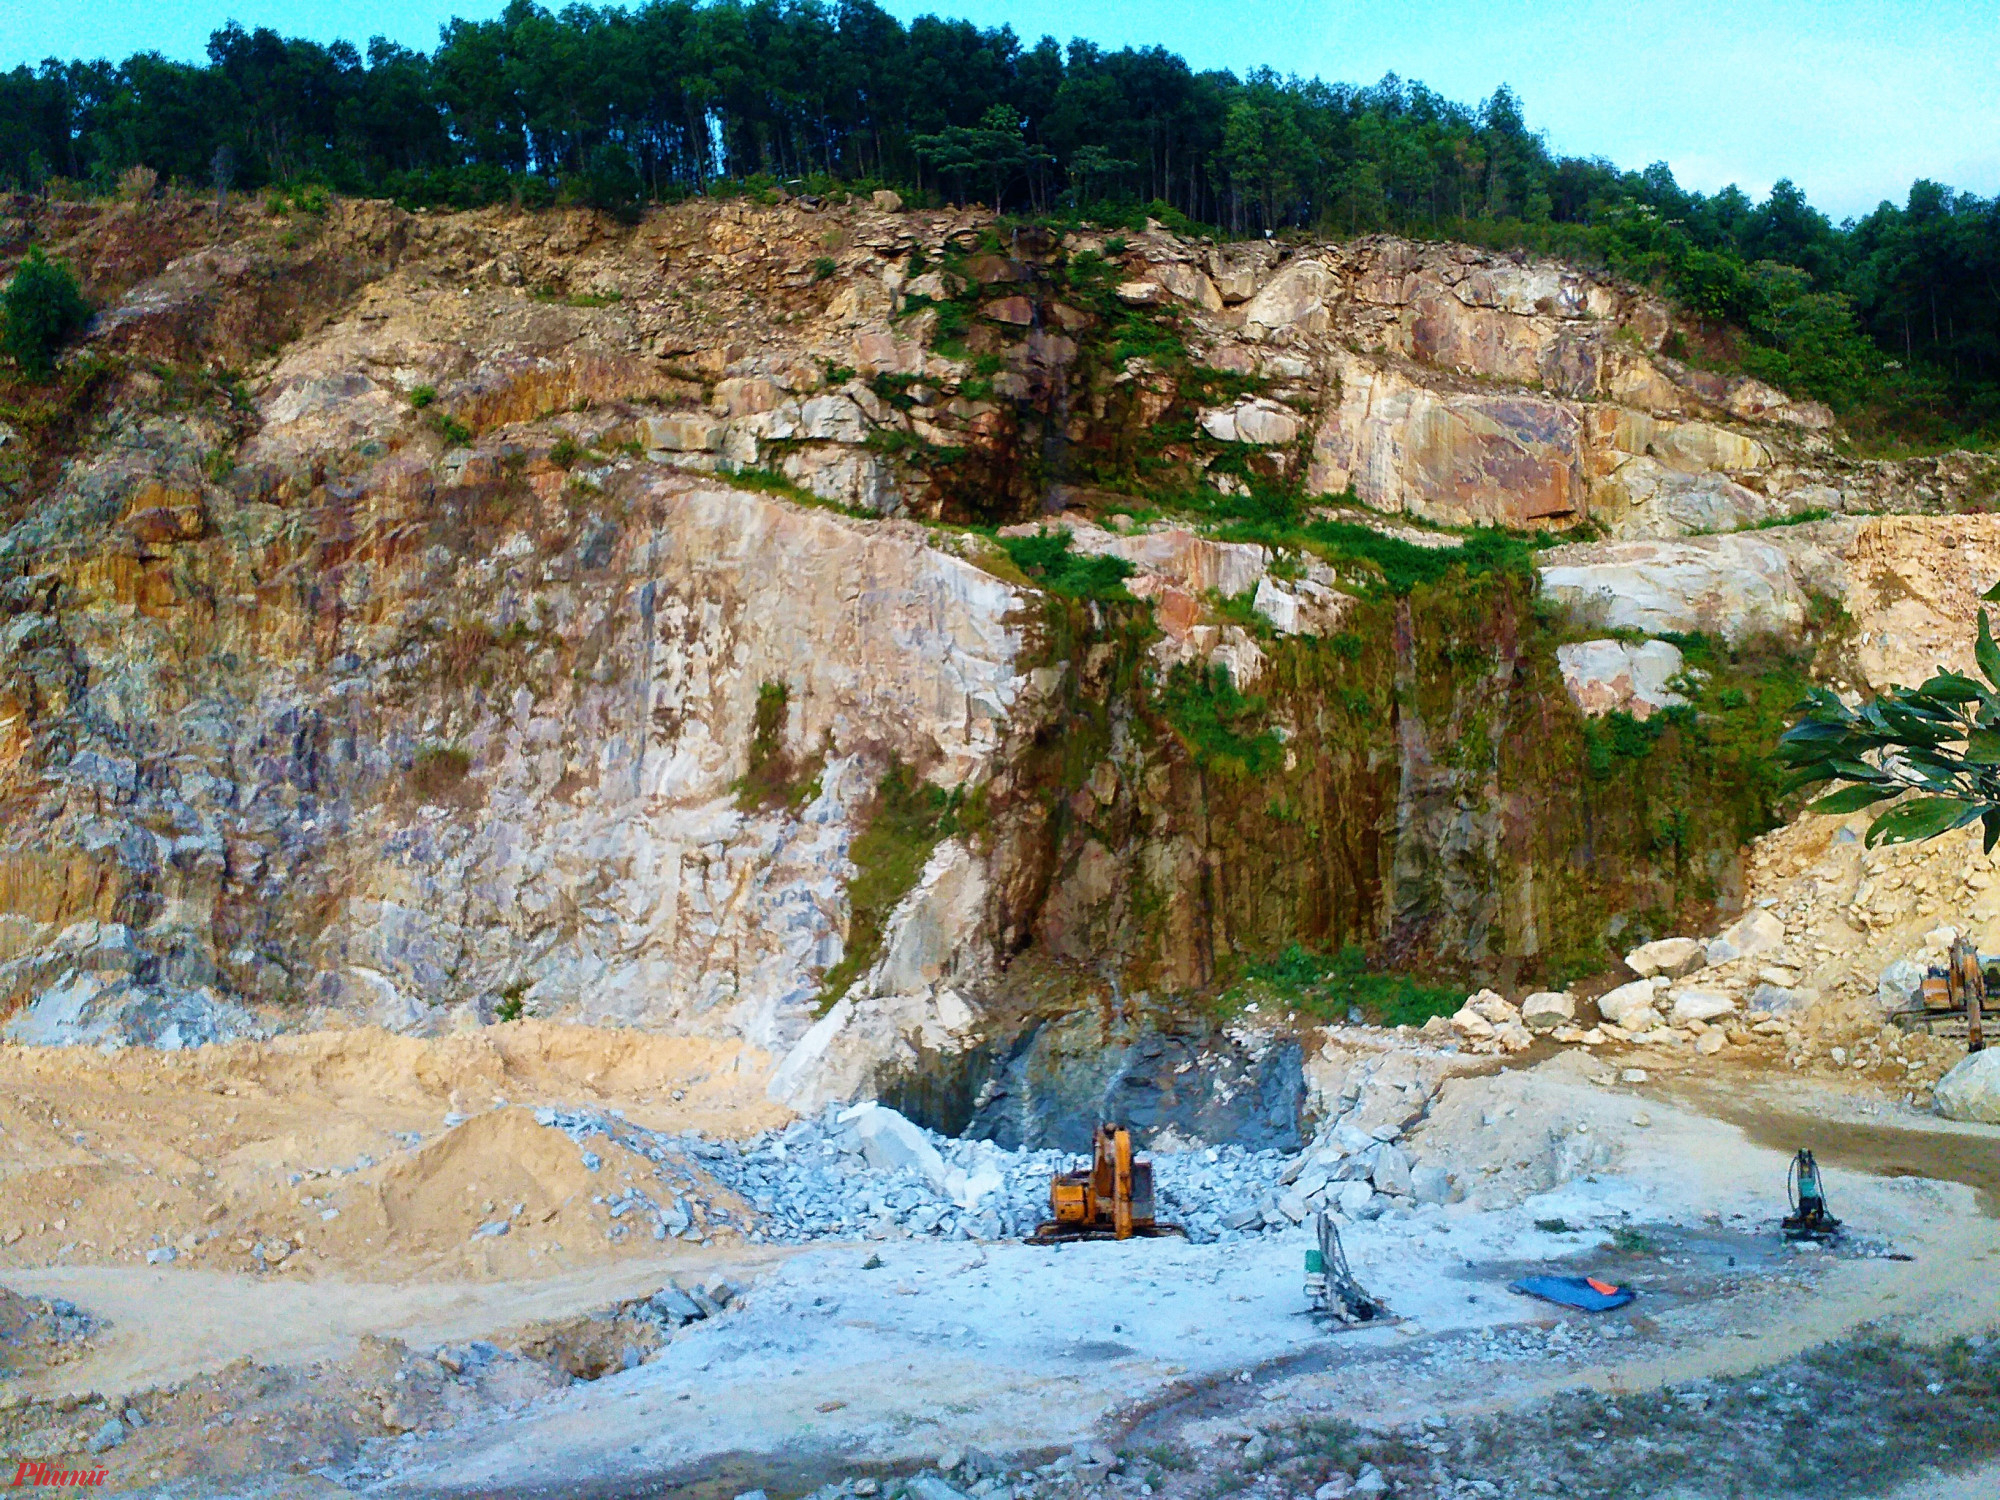 Một số mỏ đá lộ thiên tại huyện Phú Lộc, Thừa Thiên Huế nhiều năm ô nhiễm bụi, tiếng ồn, vận chuyển làm hư hỏng đường sá nhưng qua không được xử lý, bảo vệ như luật pháp quy định (Ảnh: Nhật Lam)